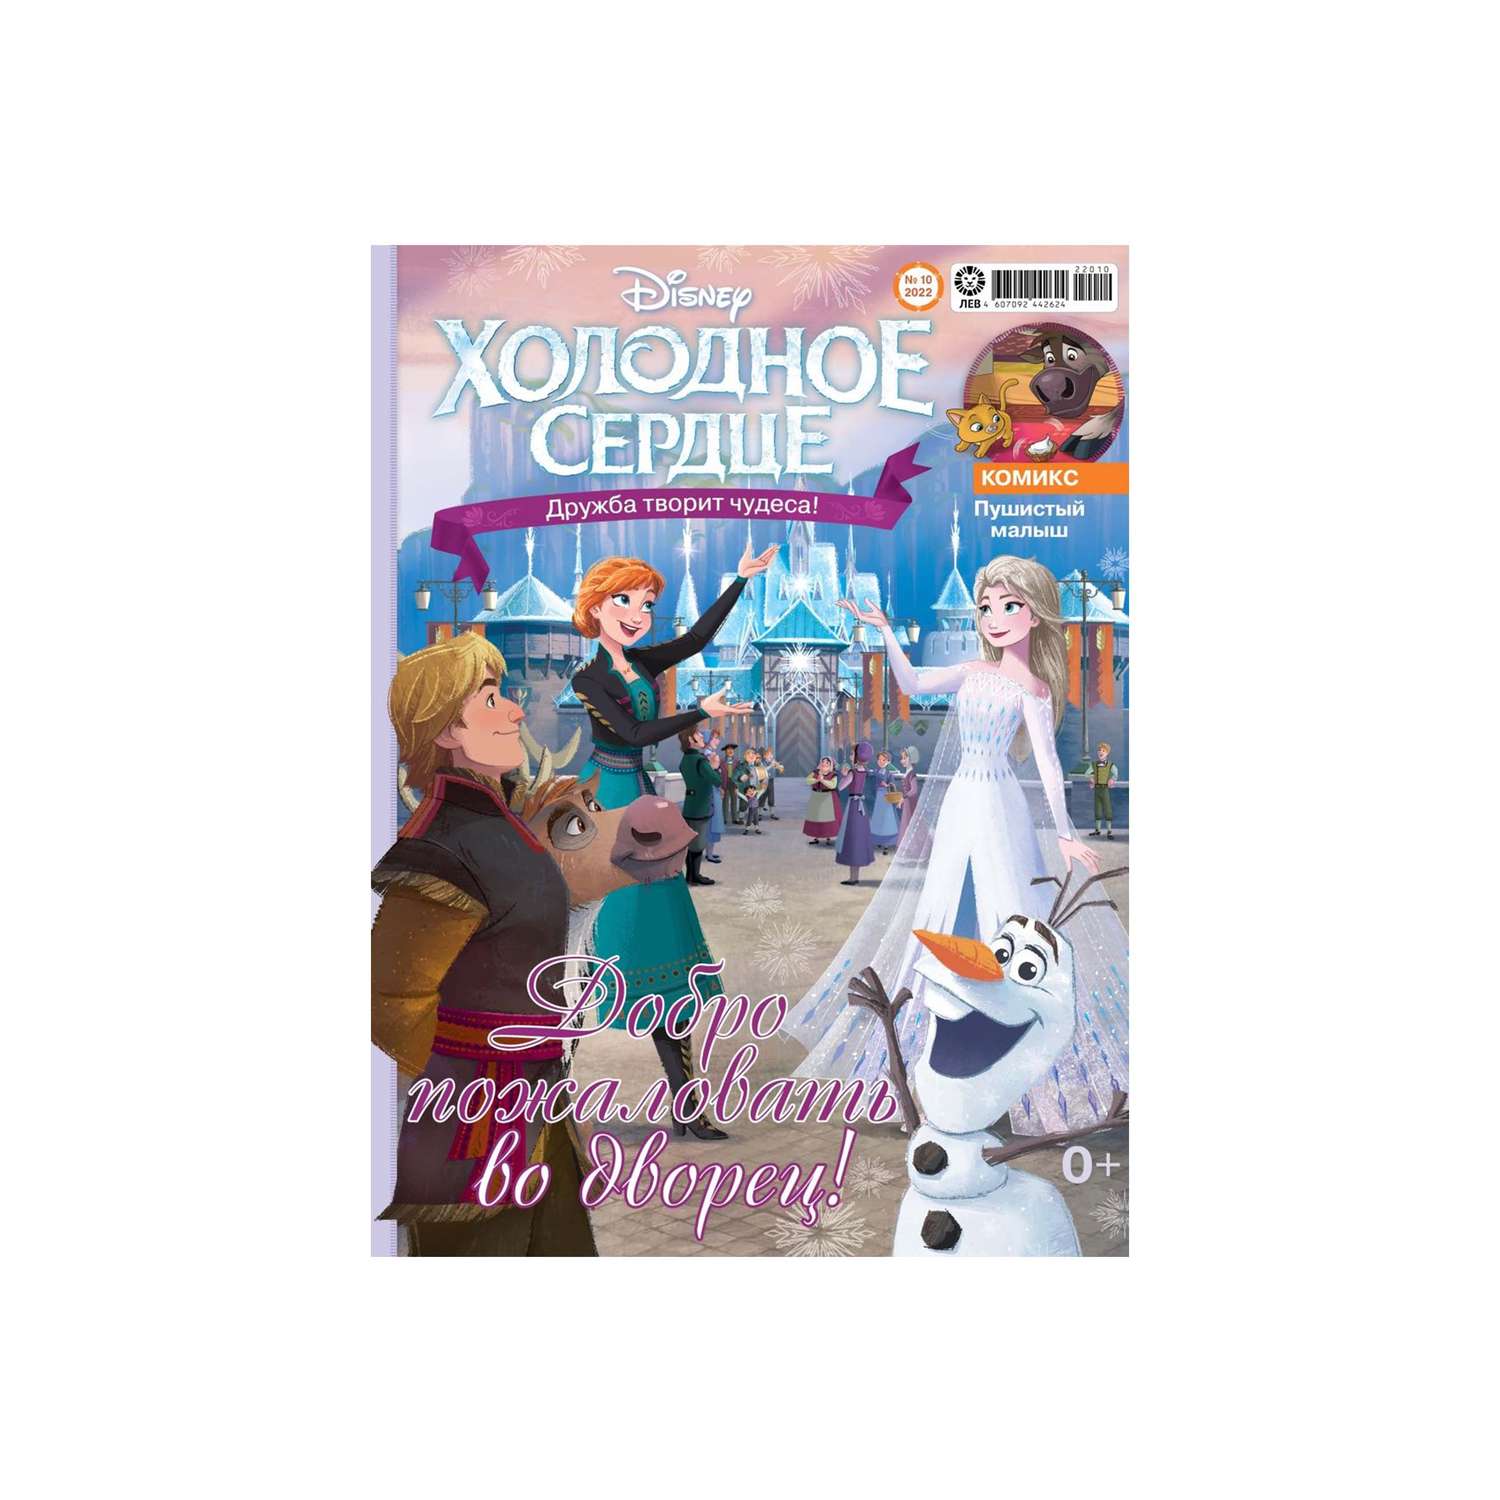 Журналы Disney Frozen комплект 2 шт 9/22 + 10/22 с вложениями игрушки Холодное сердце - фото 3